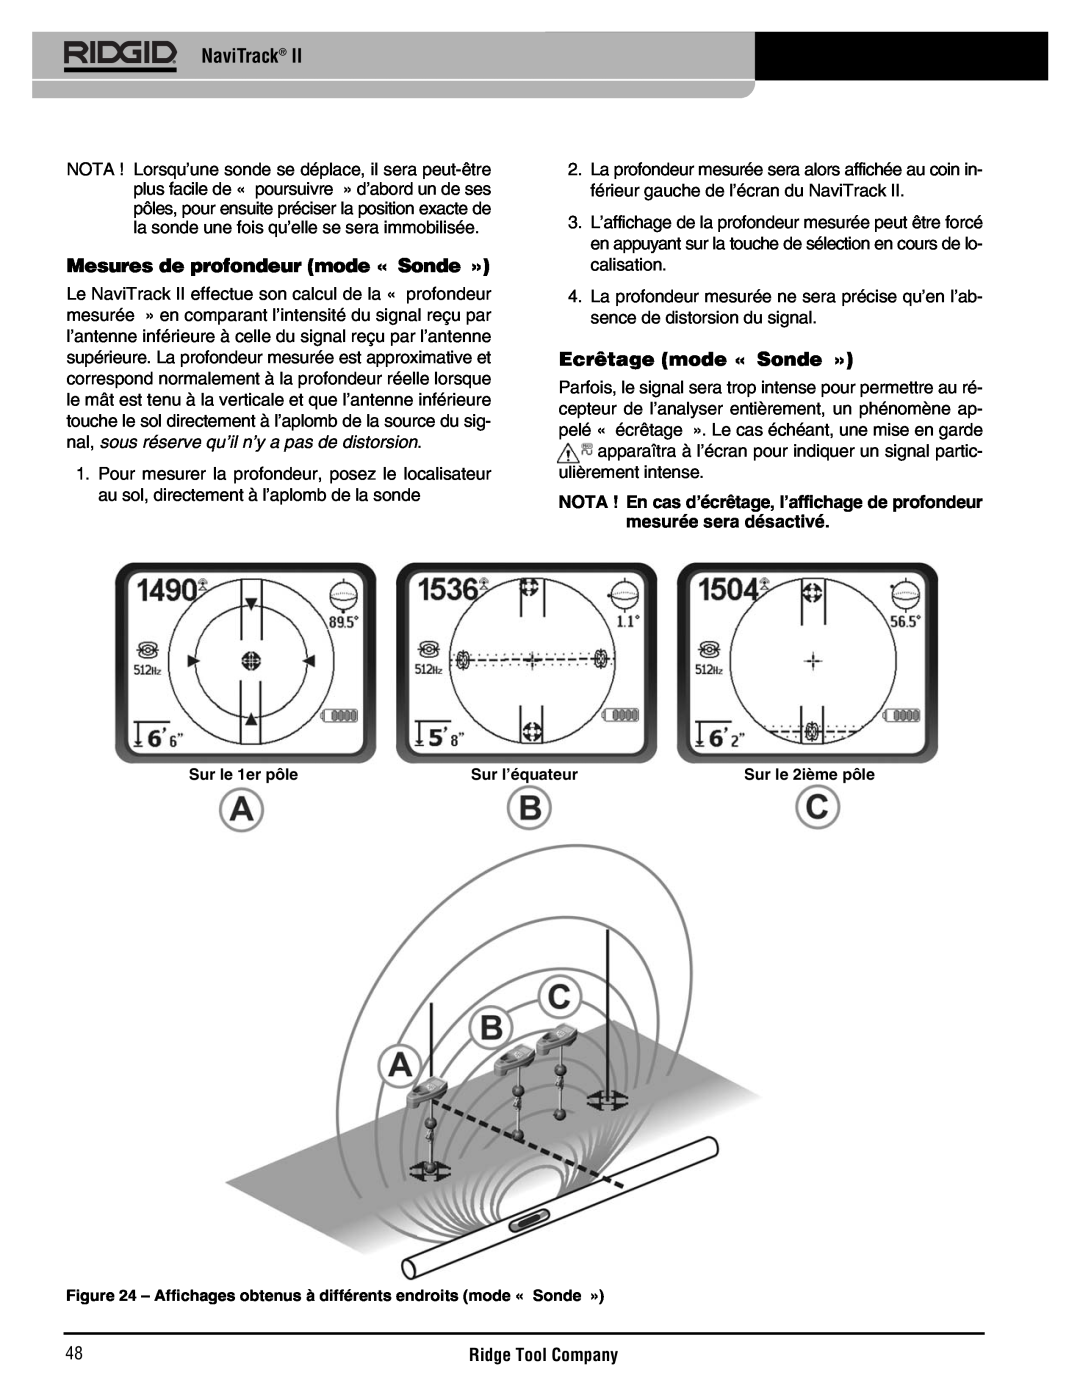 RIDGID Metal Detector manual Mesures de profondeur mode « Sonde », Ecrêtage mode « Sonde », NaviTrack, Sur le 1er pôle 